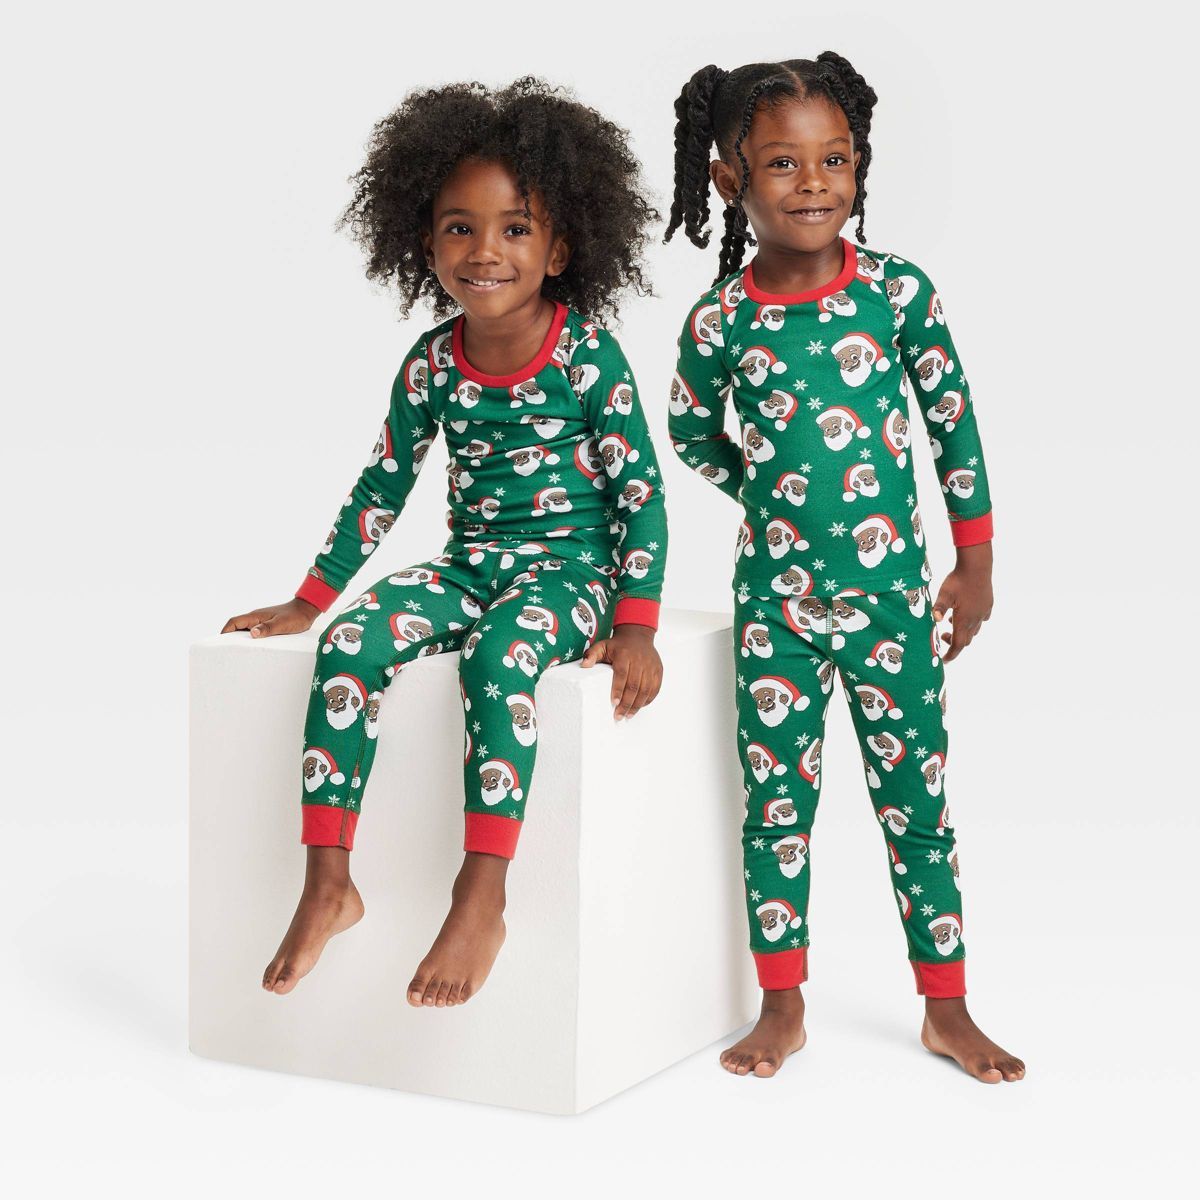 Greentop Gifts Toddler Santa Print Matching Family Pajama - Green | Target